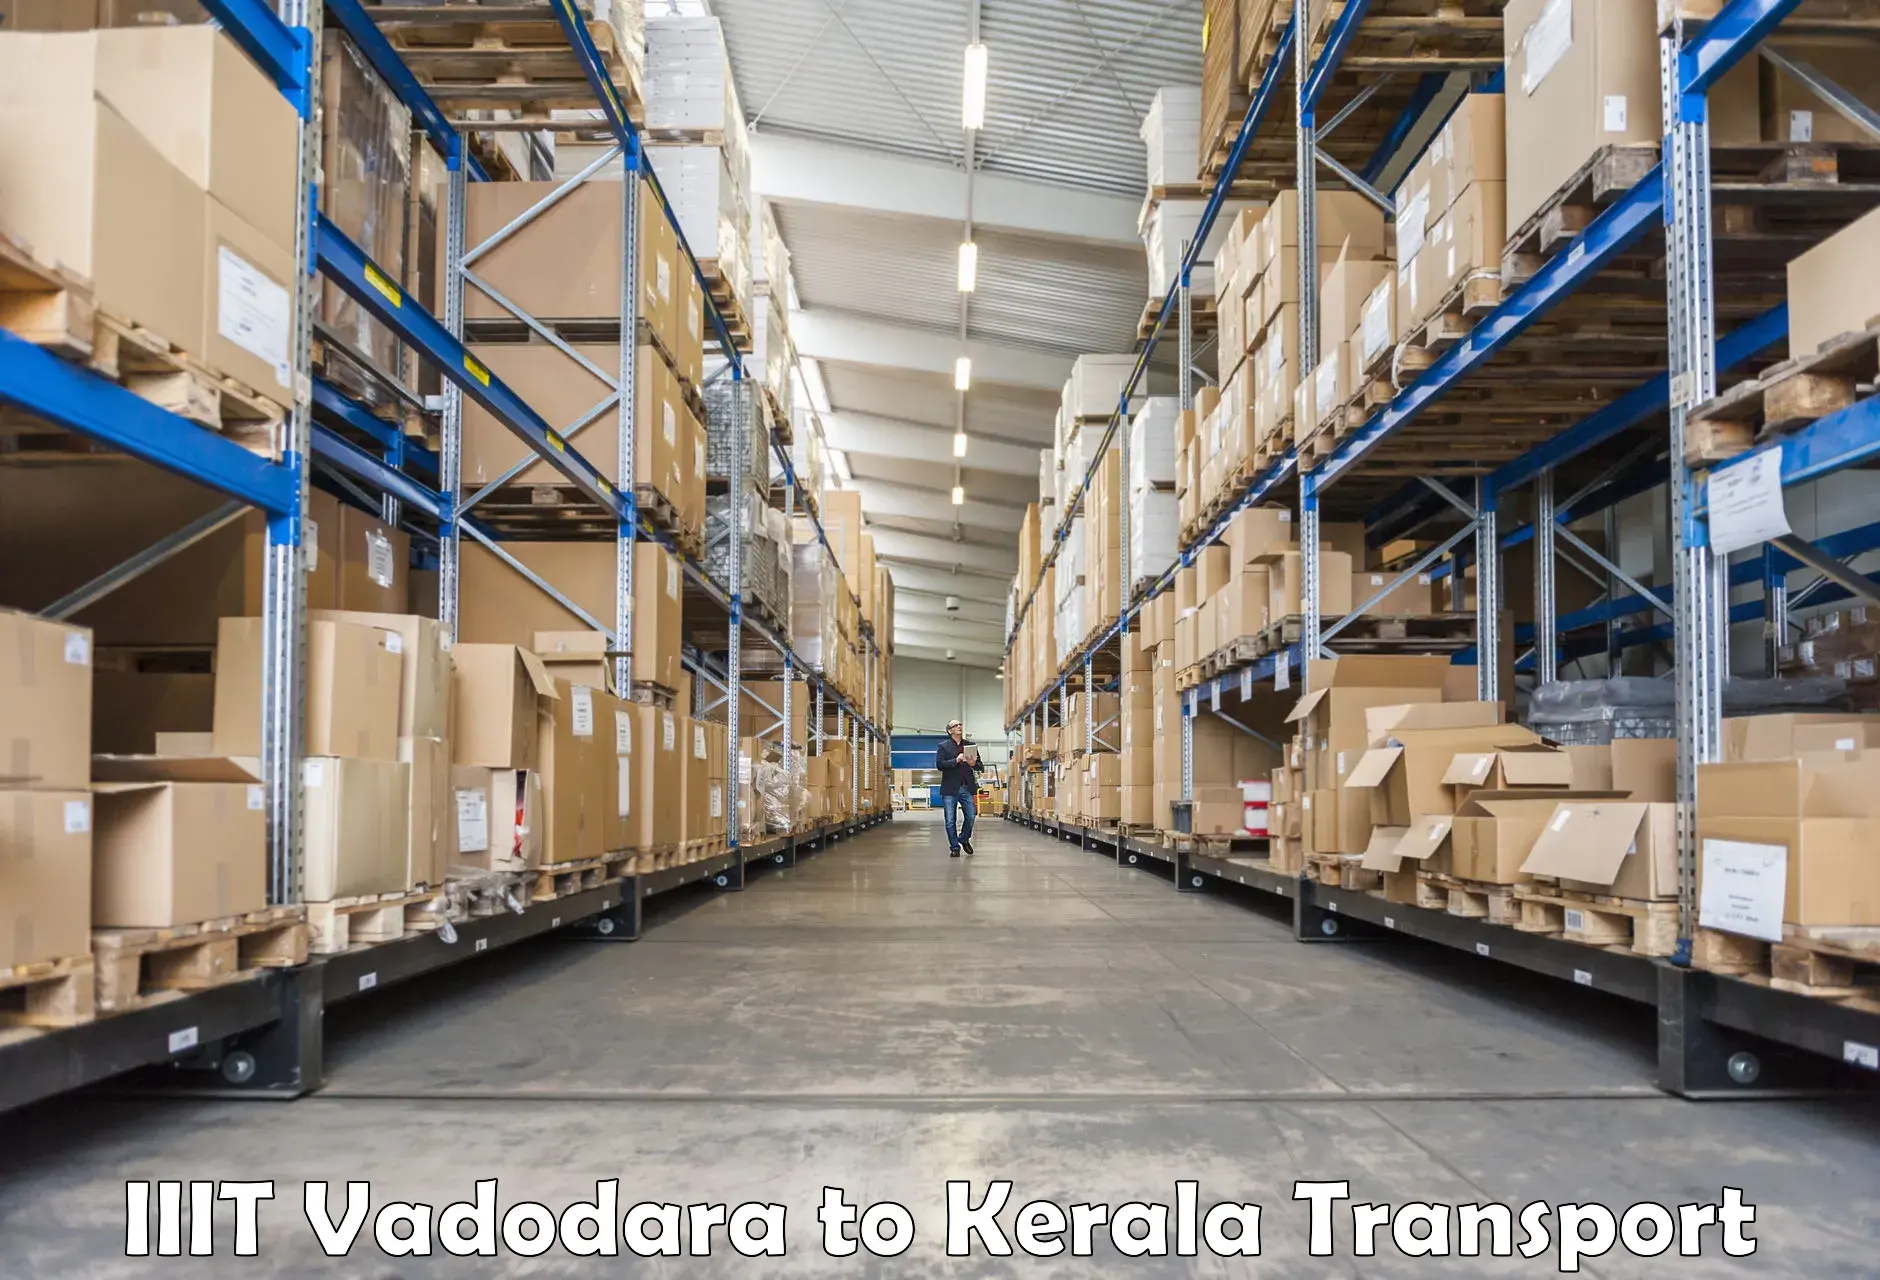 Online transport IIIT Vadodara to Kottarakkara